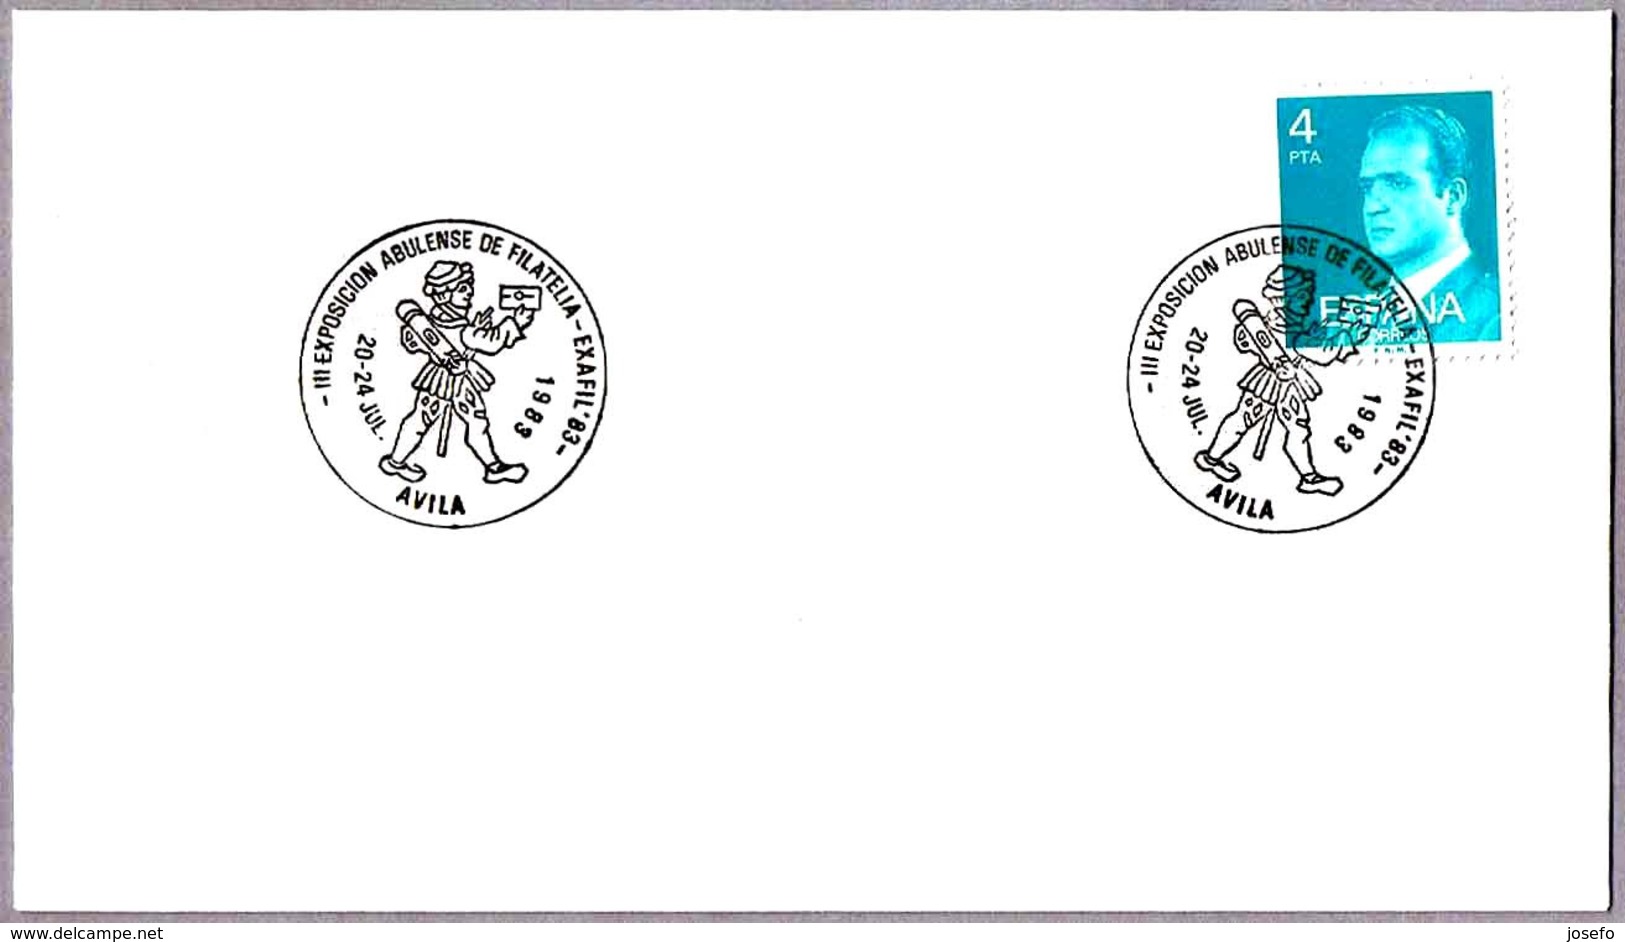 Matasellos III EXP. ABULENSE DE FILATELIA. MENSAJERO POSTAL - Postal Messenger. Avila 1983 - Post